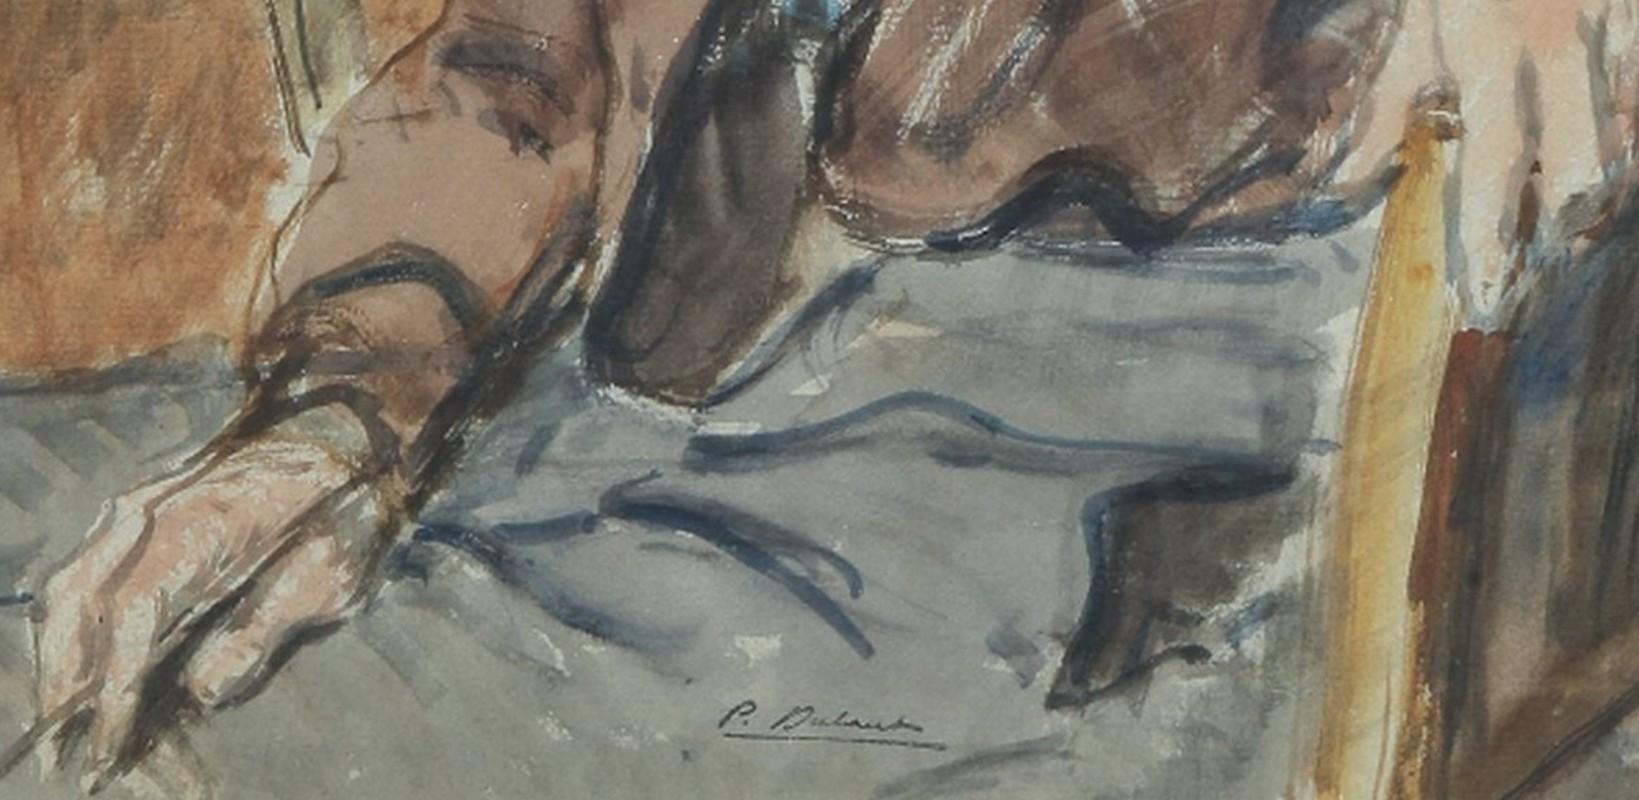 Pierre Olivier Dubaut (1886-1968) 
Porträt eines Künstlers
Stempel des Künstlers auf dem unteren Teil
Aquarell auf Papier
46.5 x 30 cm

In einem Vintage-Rahmen : 58 x 42 cm, einige Schäden im Passepartout oben rechts, siehe Detailfoto bitte.

Pierre